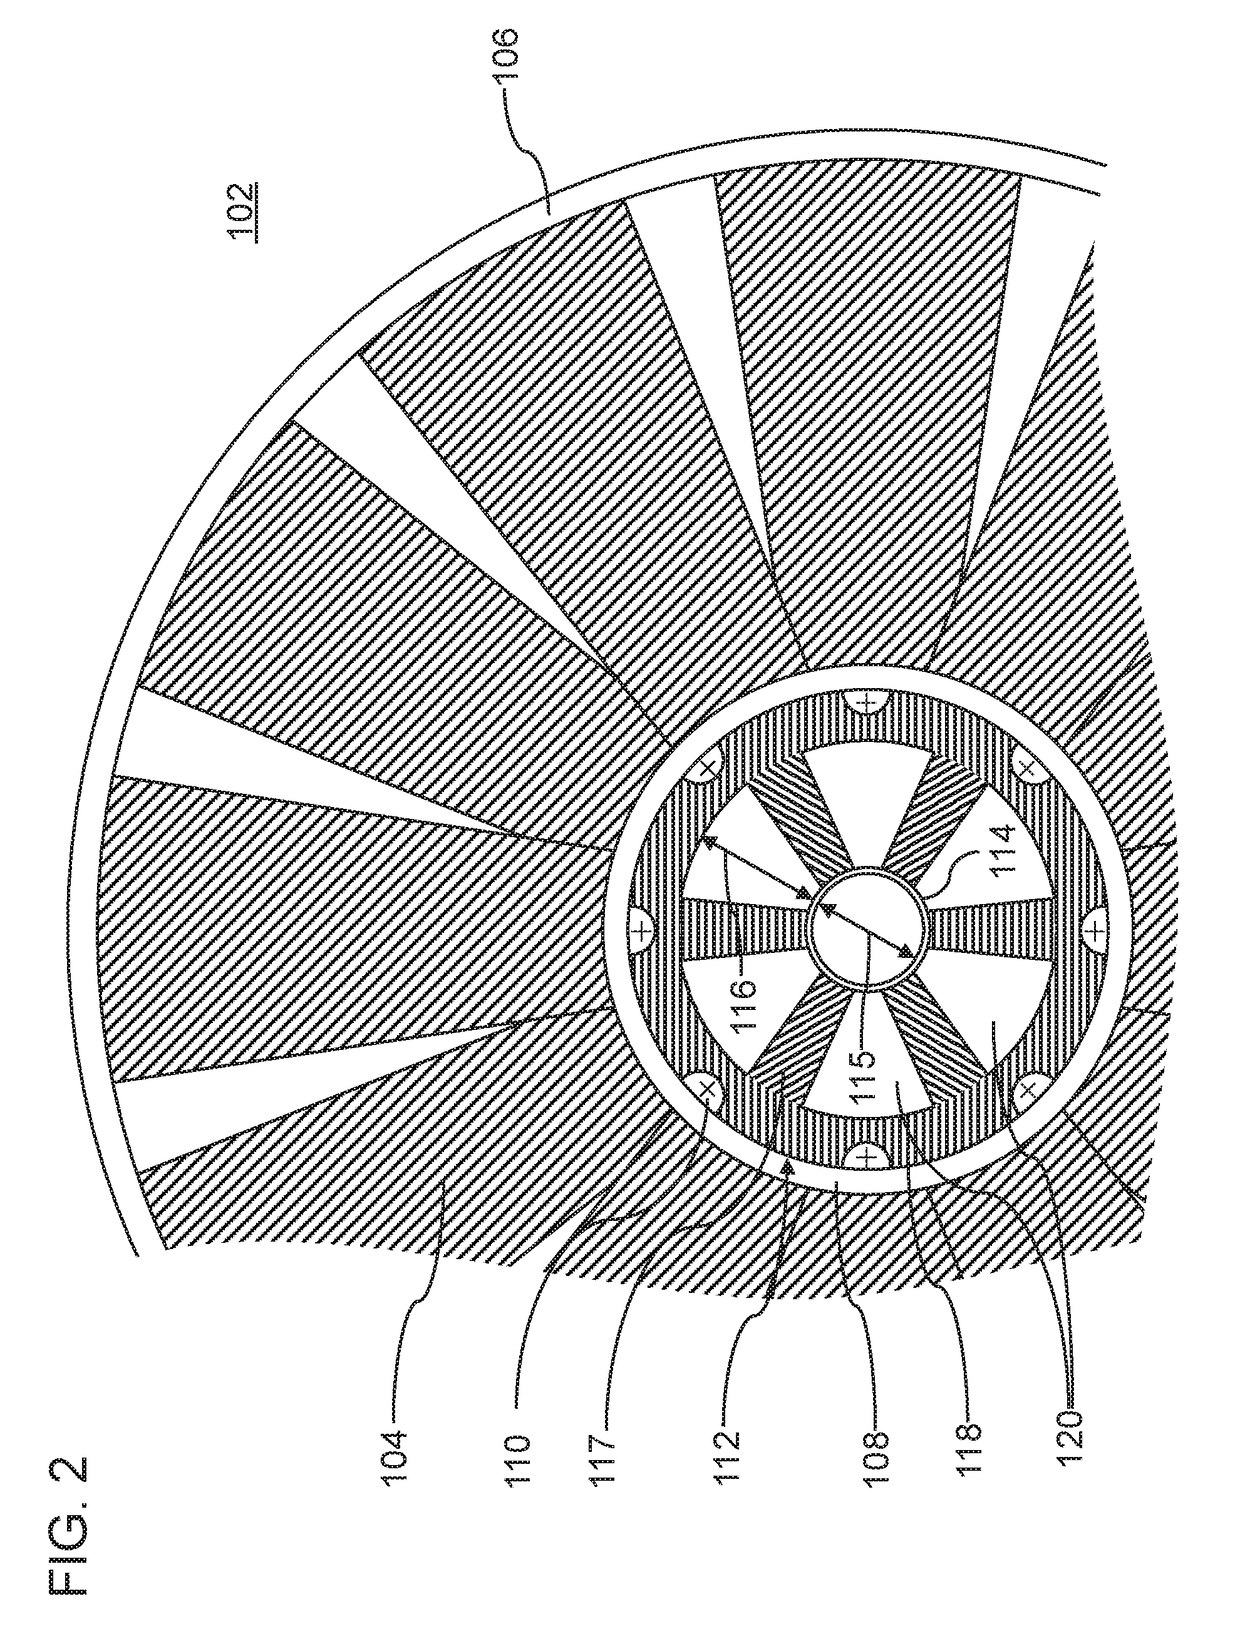 Axial fan wheel